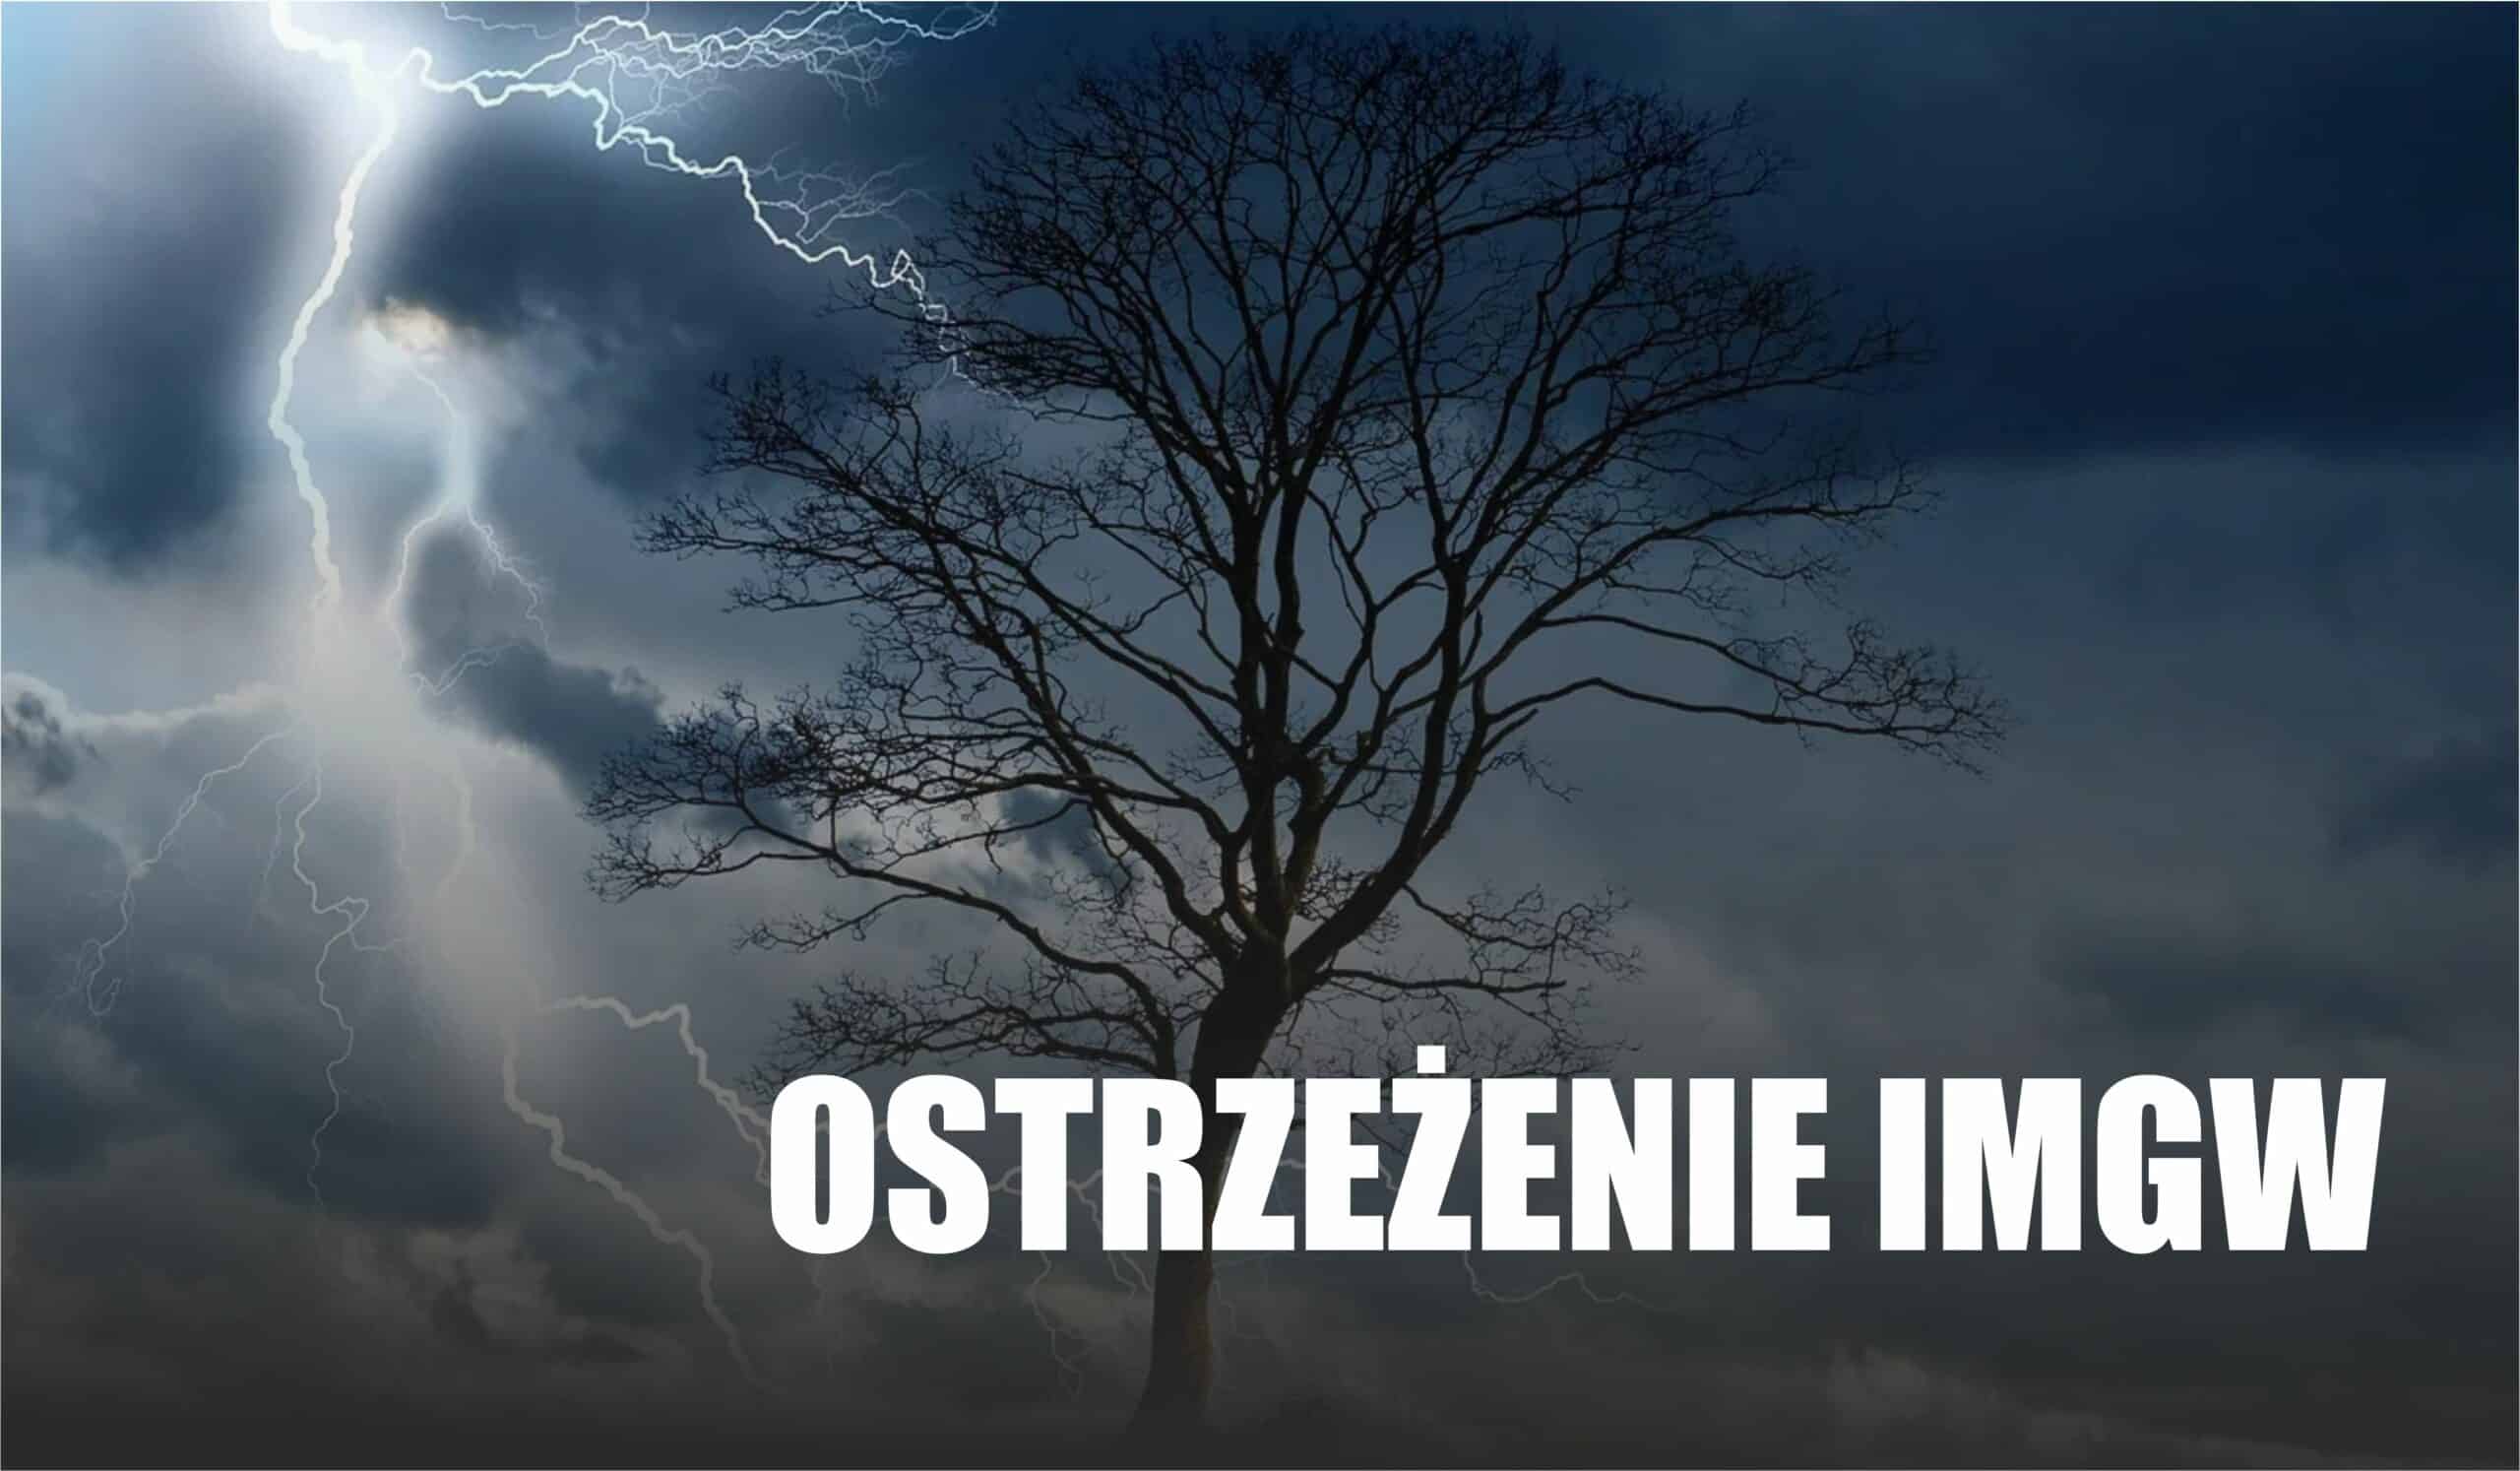 Pogoda w Polsce szczególnie o tej porze roku jest zmienna. IMGW wydał ostrzeżenie pierwszego stopnia. Alert pogodowy zapowiada między innymi silny wiatr